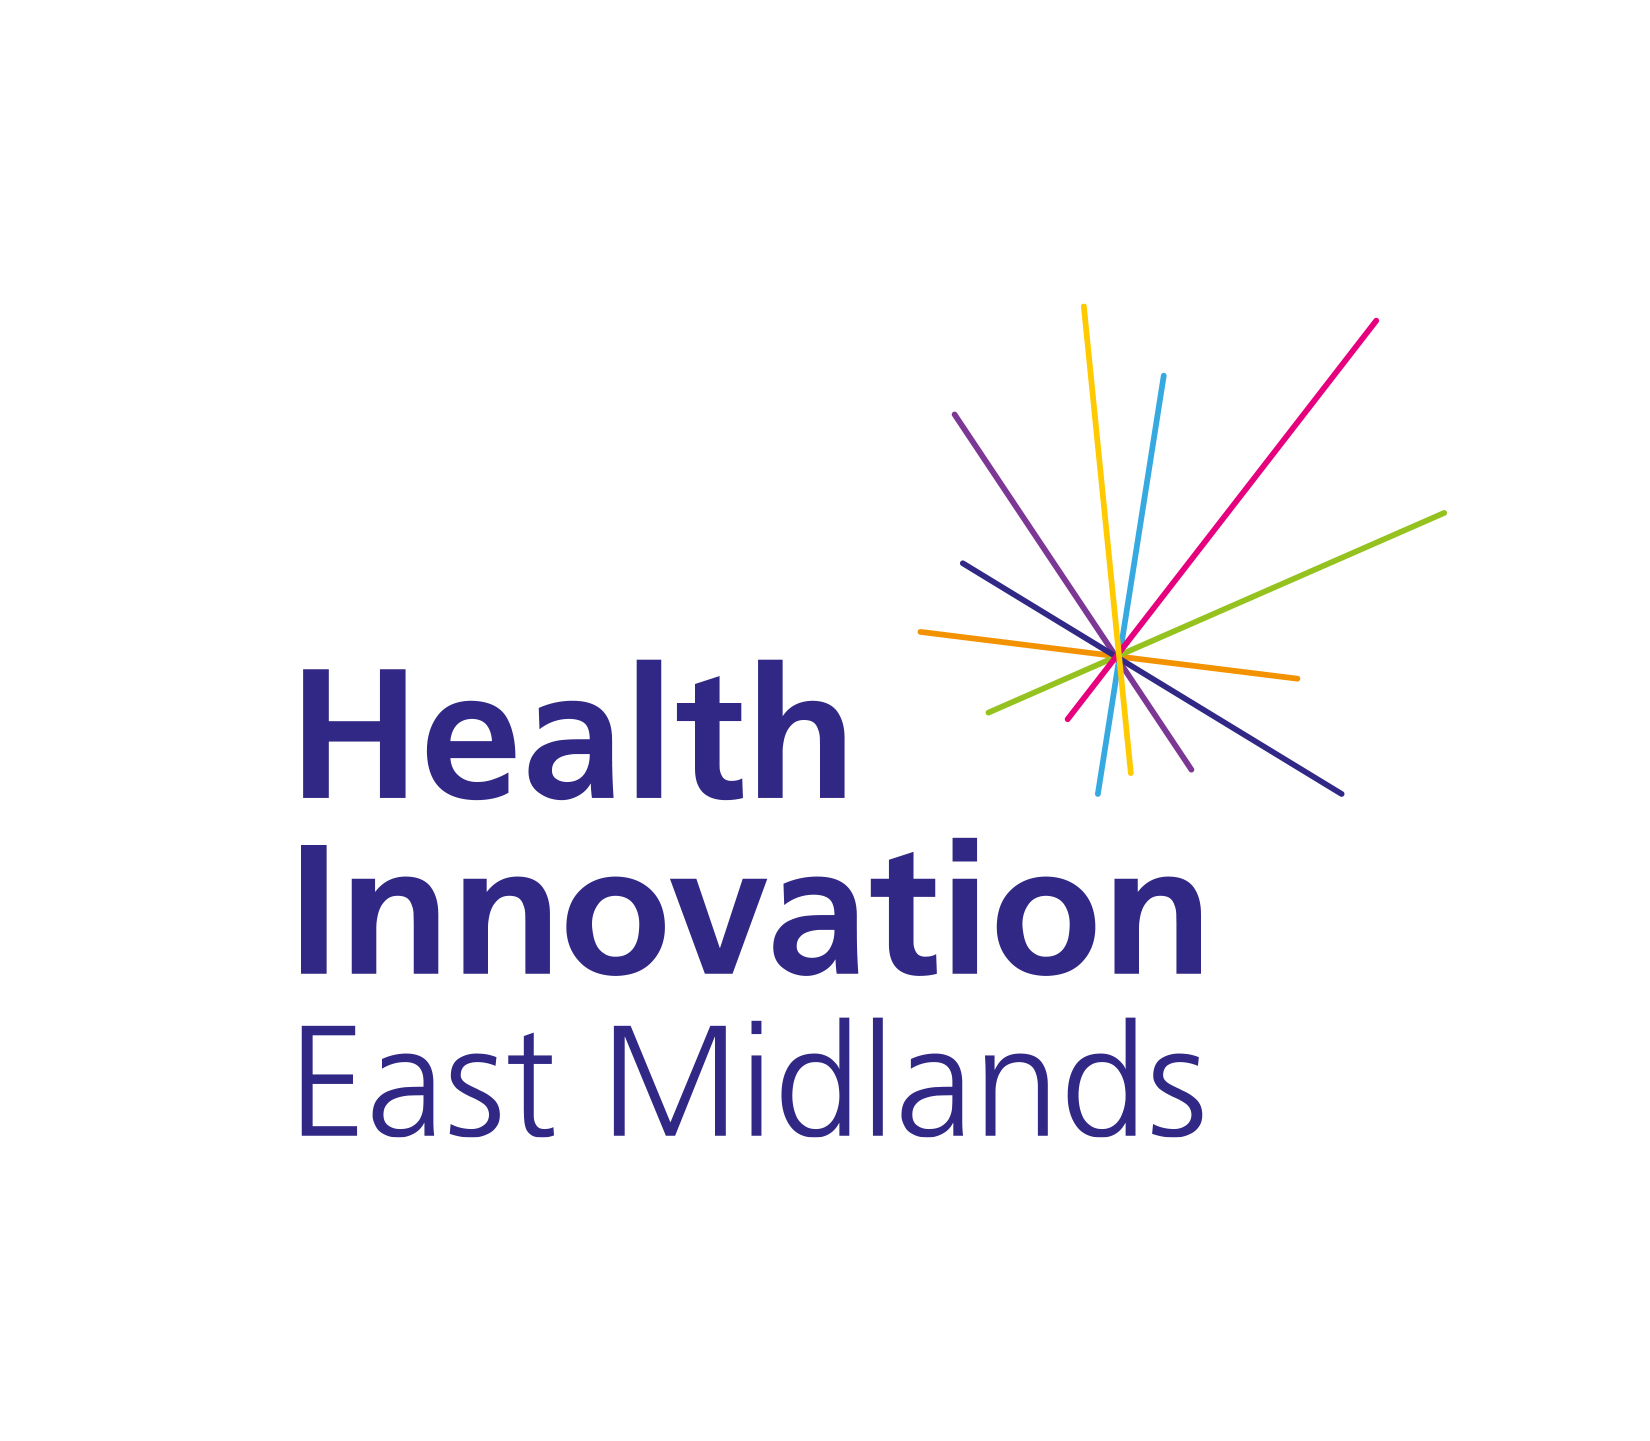 Health Innovation East Midlands